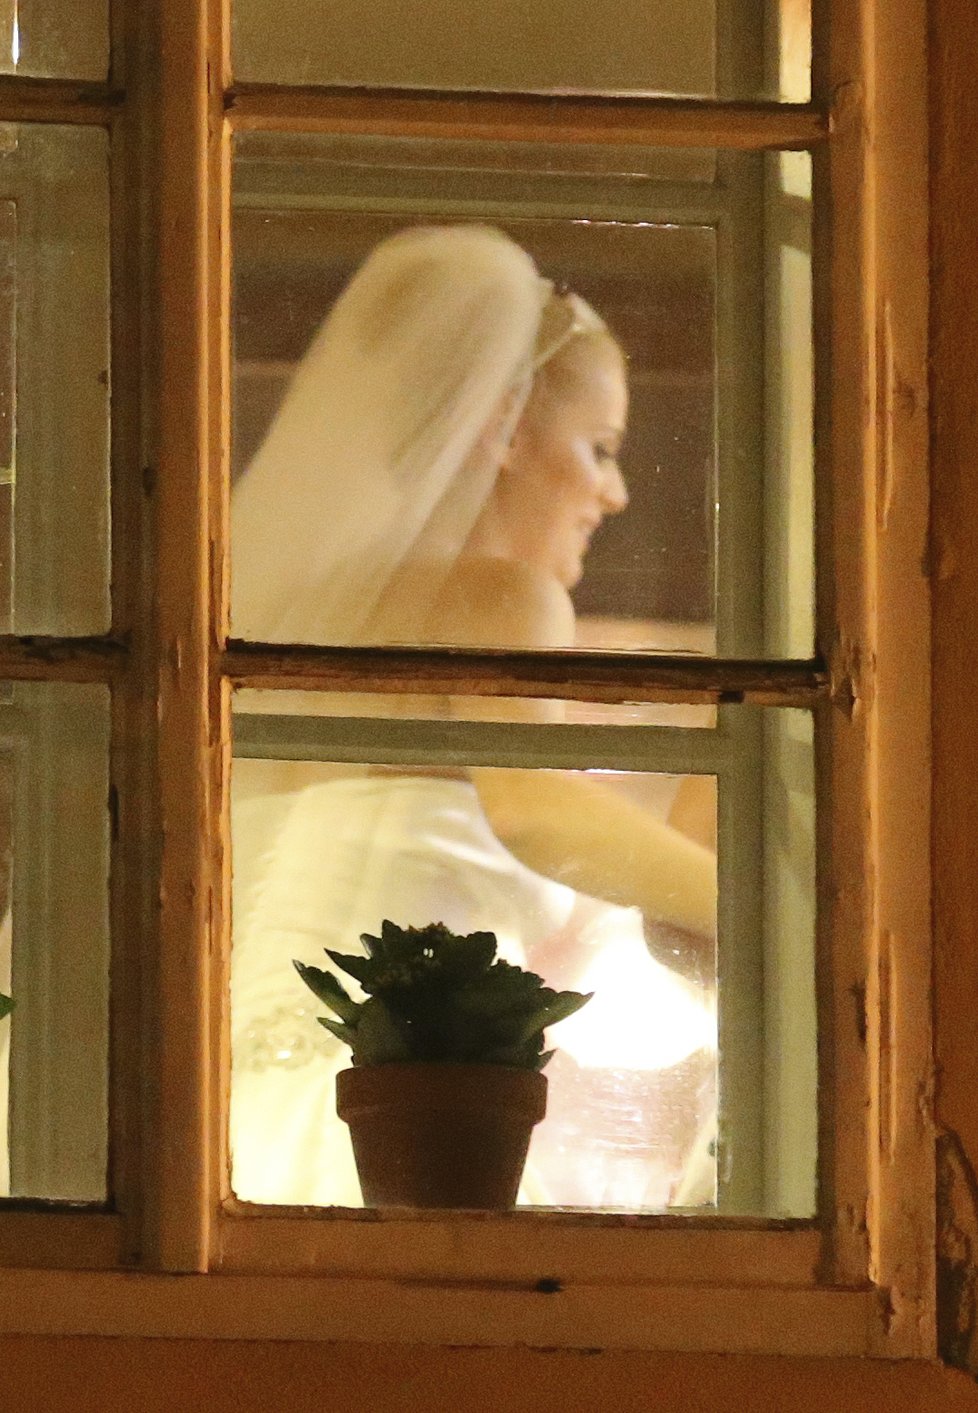 Ornellina svatba probíhala za zavřenými dveřmi...v oknech ale občas někdo vykouknul!